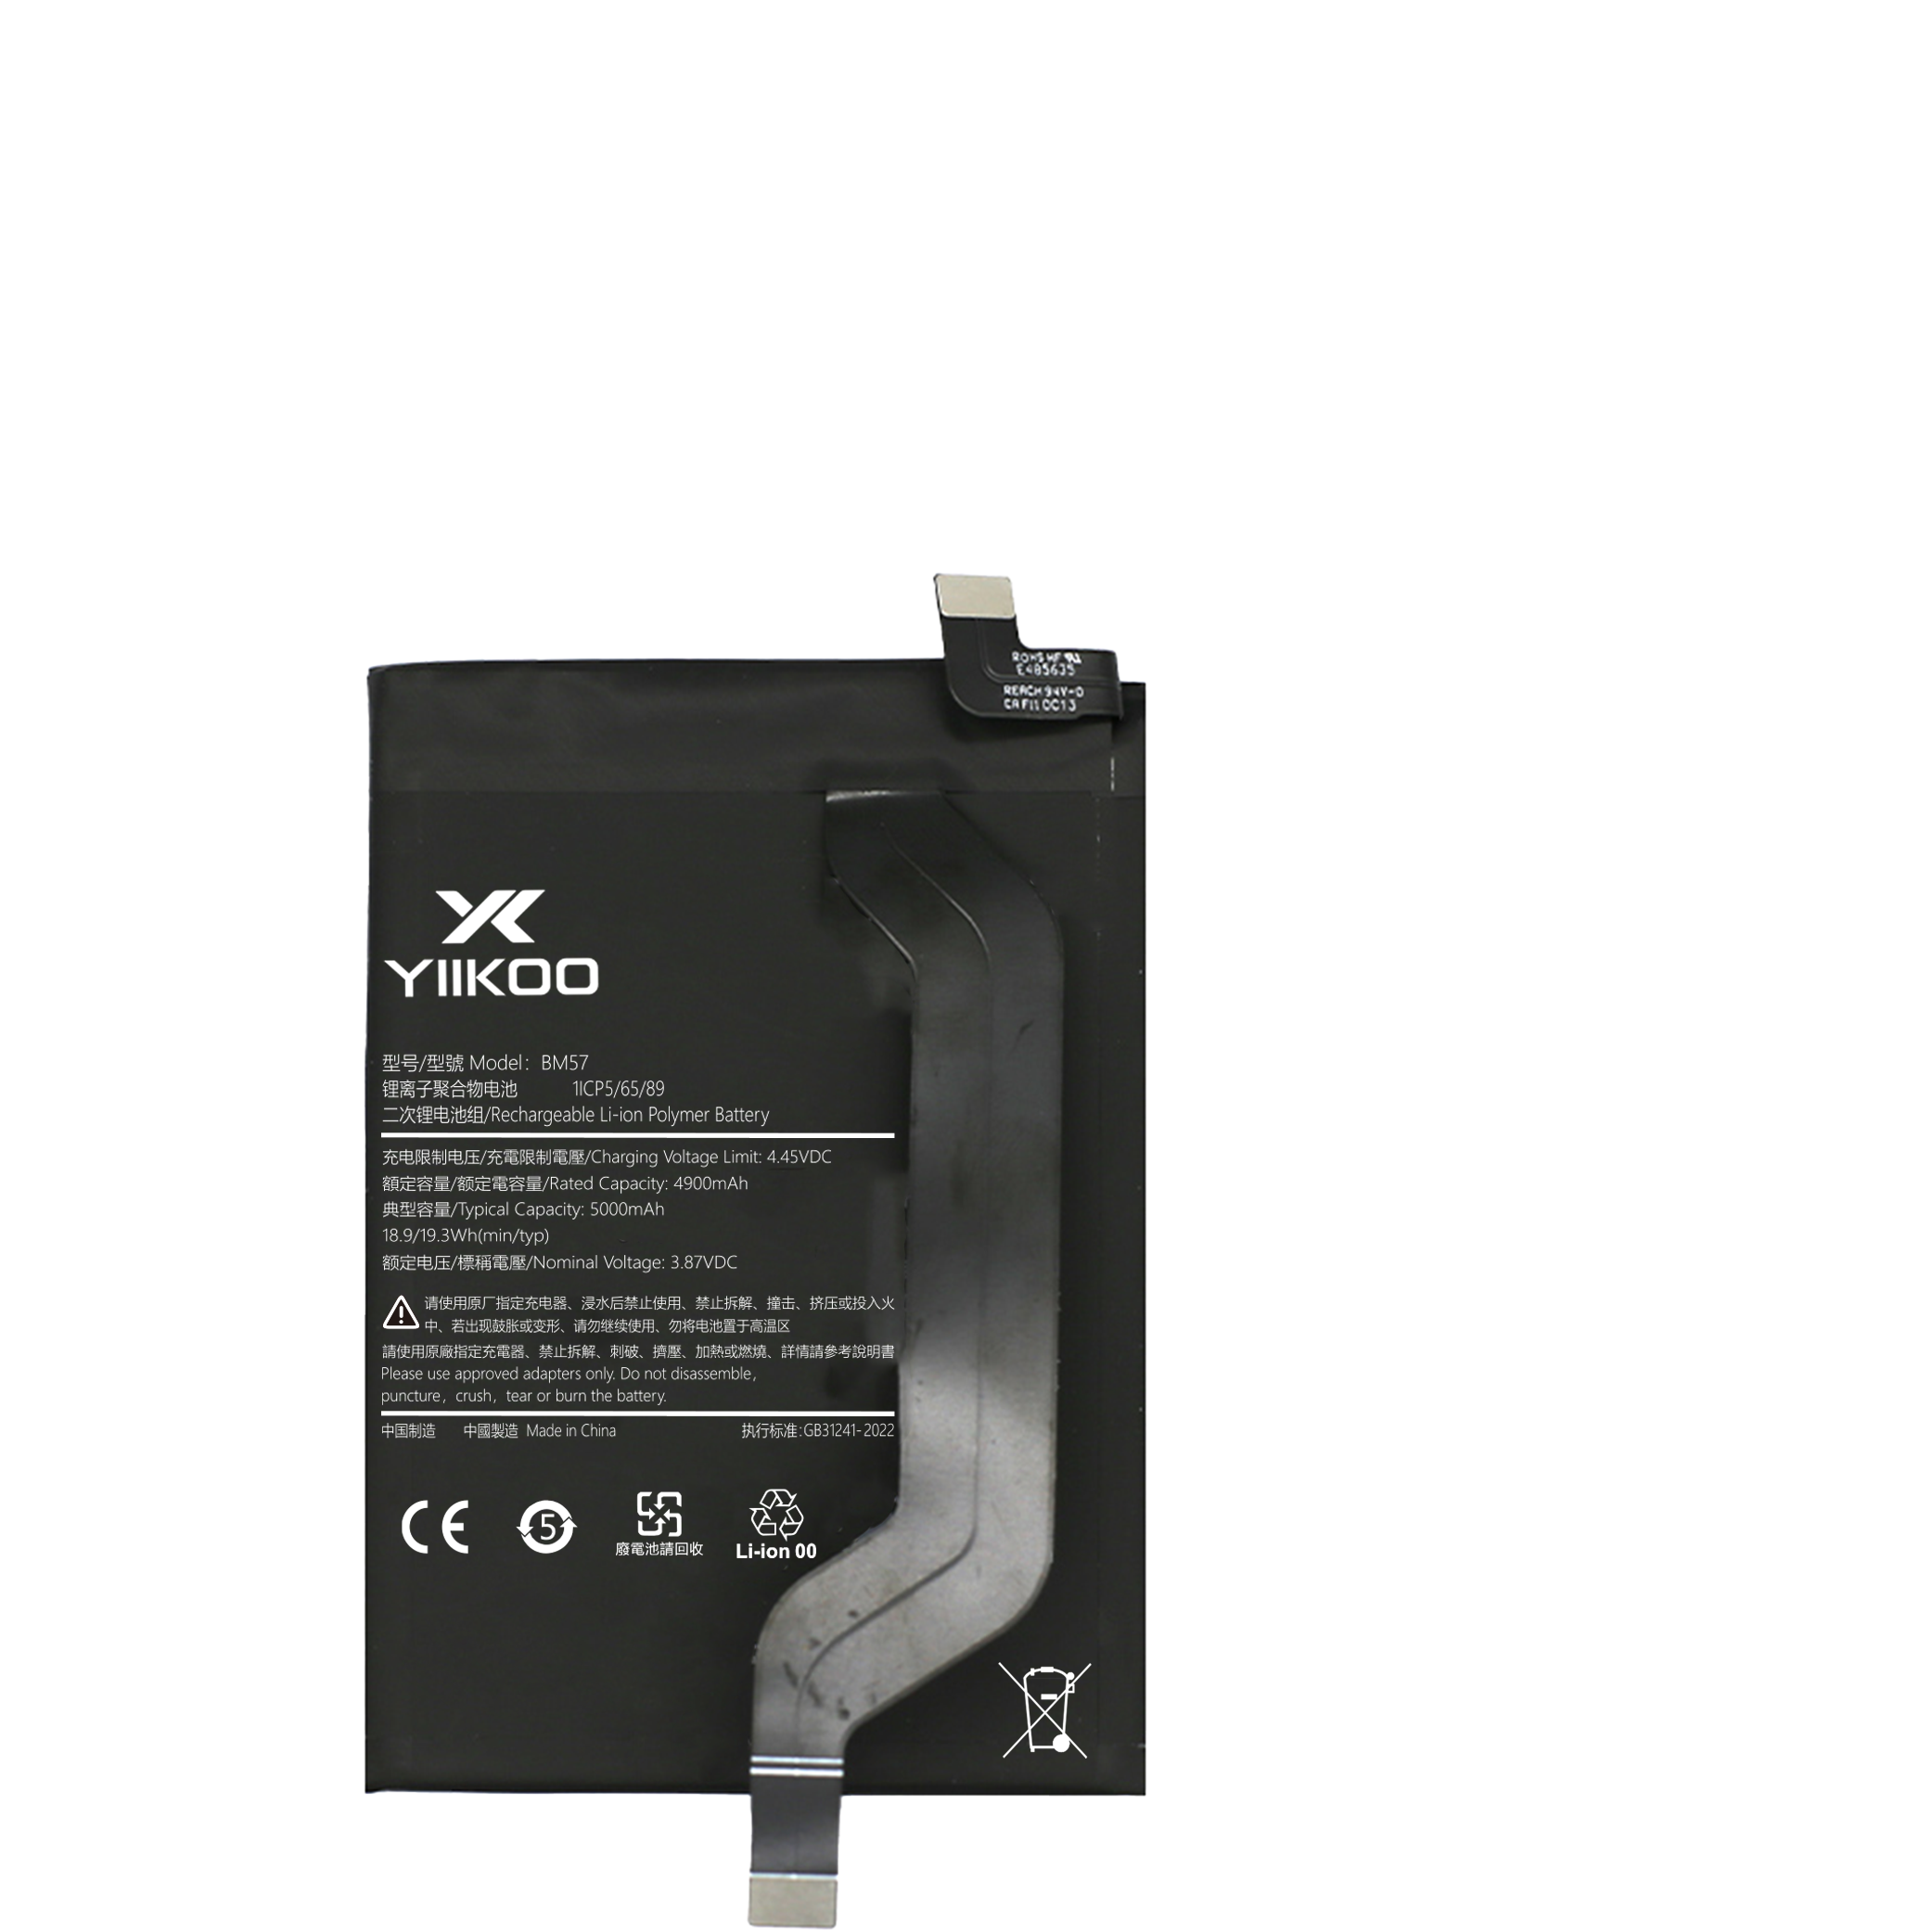 Hongmi Note10Pro Battery (4900mAh) BM57